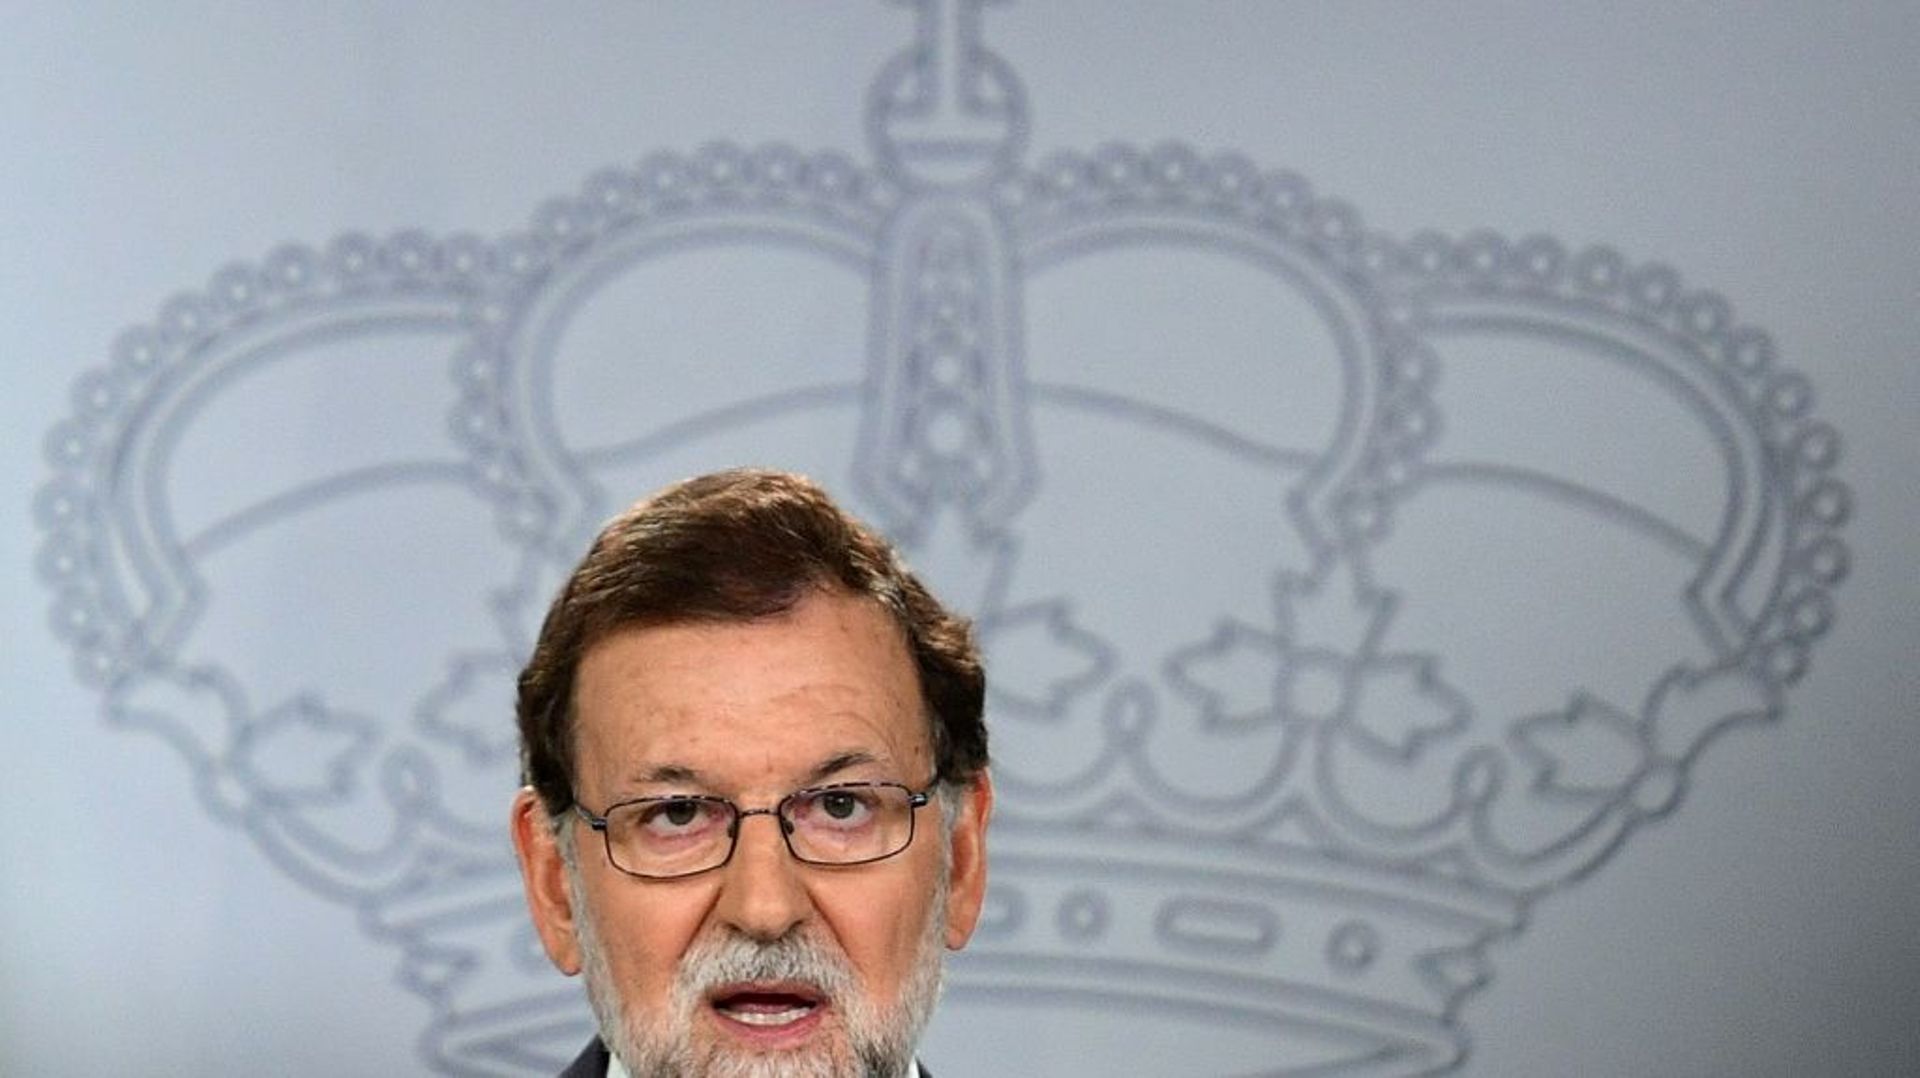 Le chef du gouvernement espagnol, Mariano Rajoy, donne une conférence de presse à Madrid, le 7 septembre 2017 